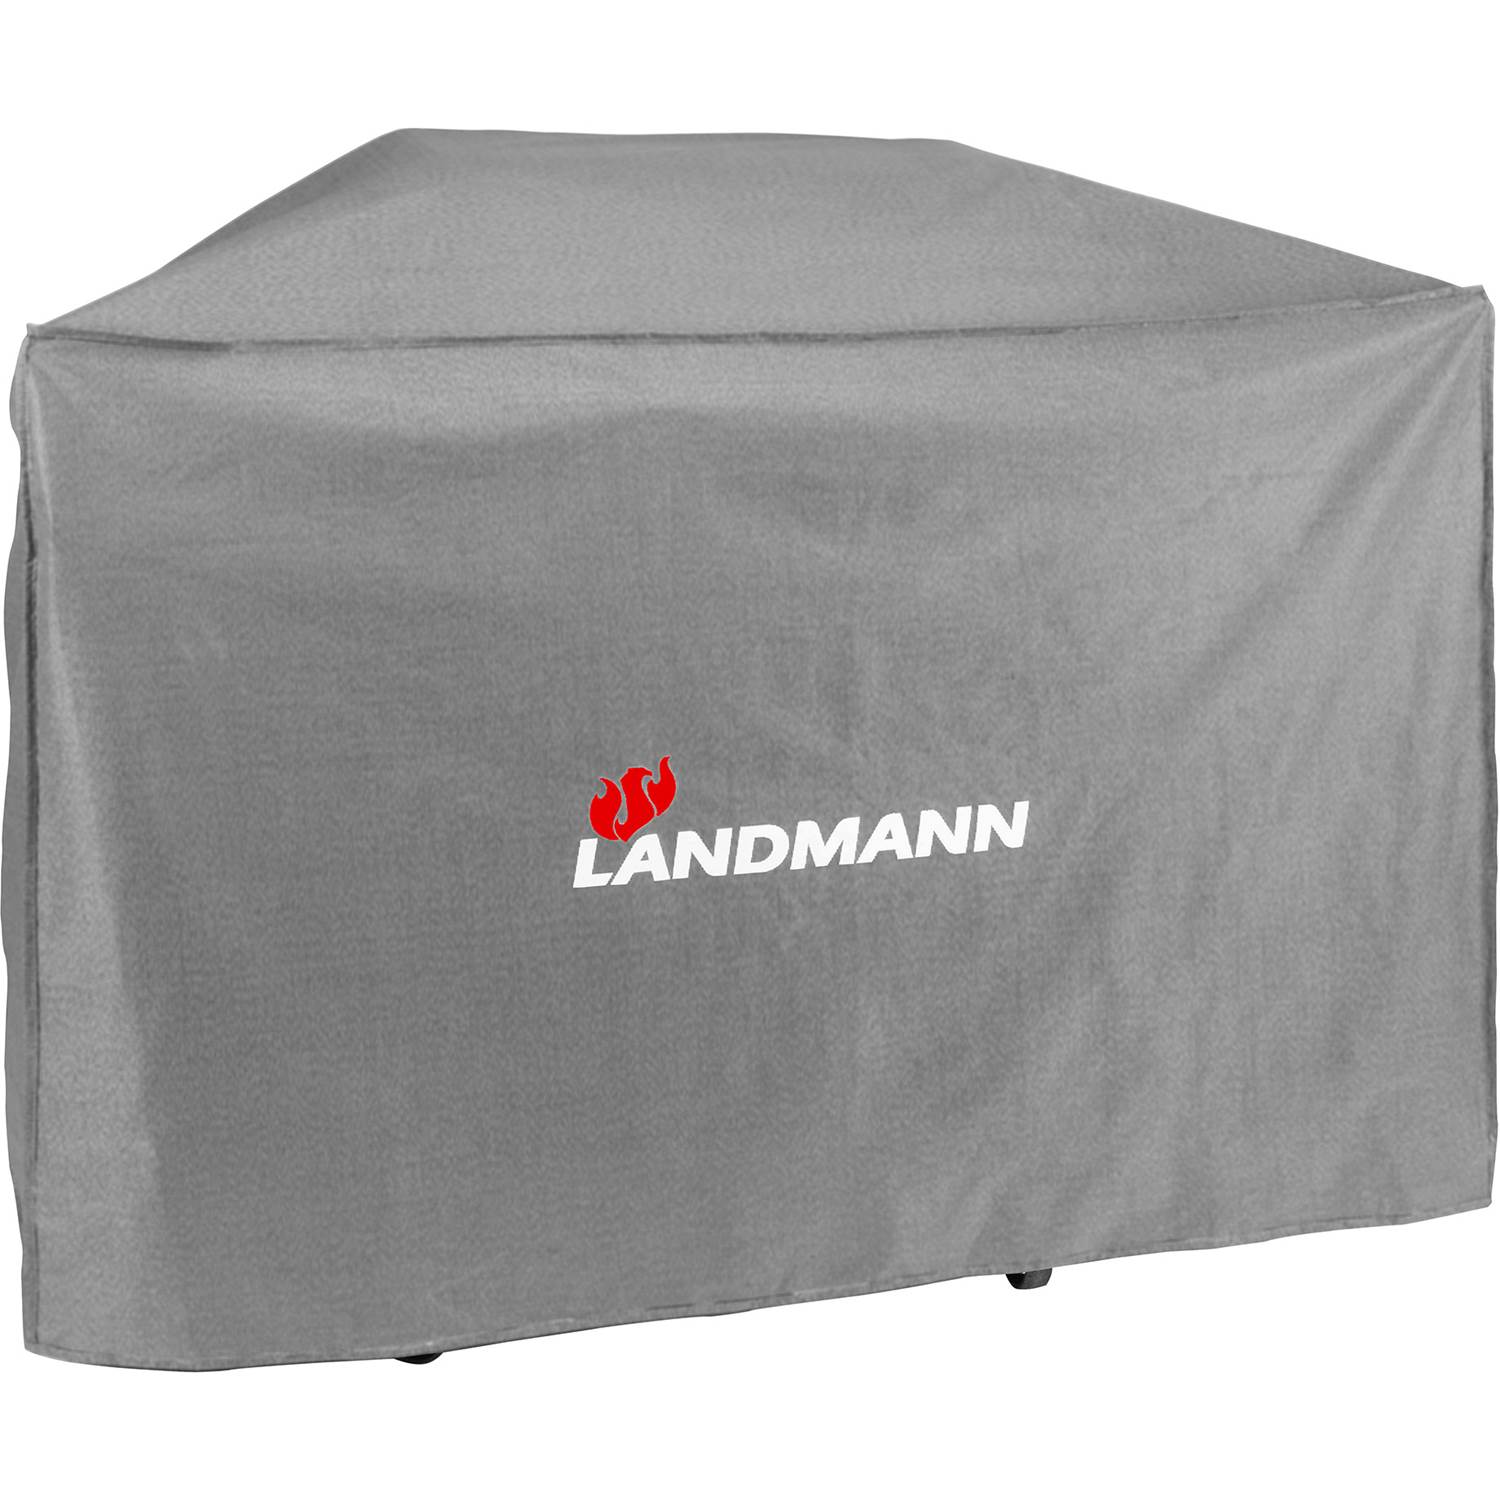 Landmann Grillöverdrag Premium XL 15707